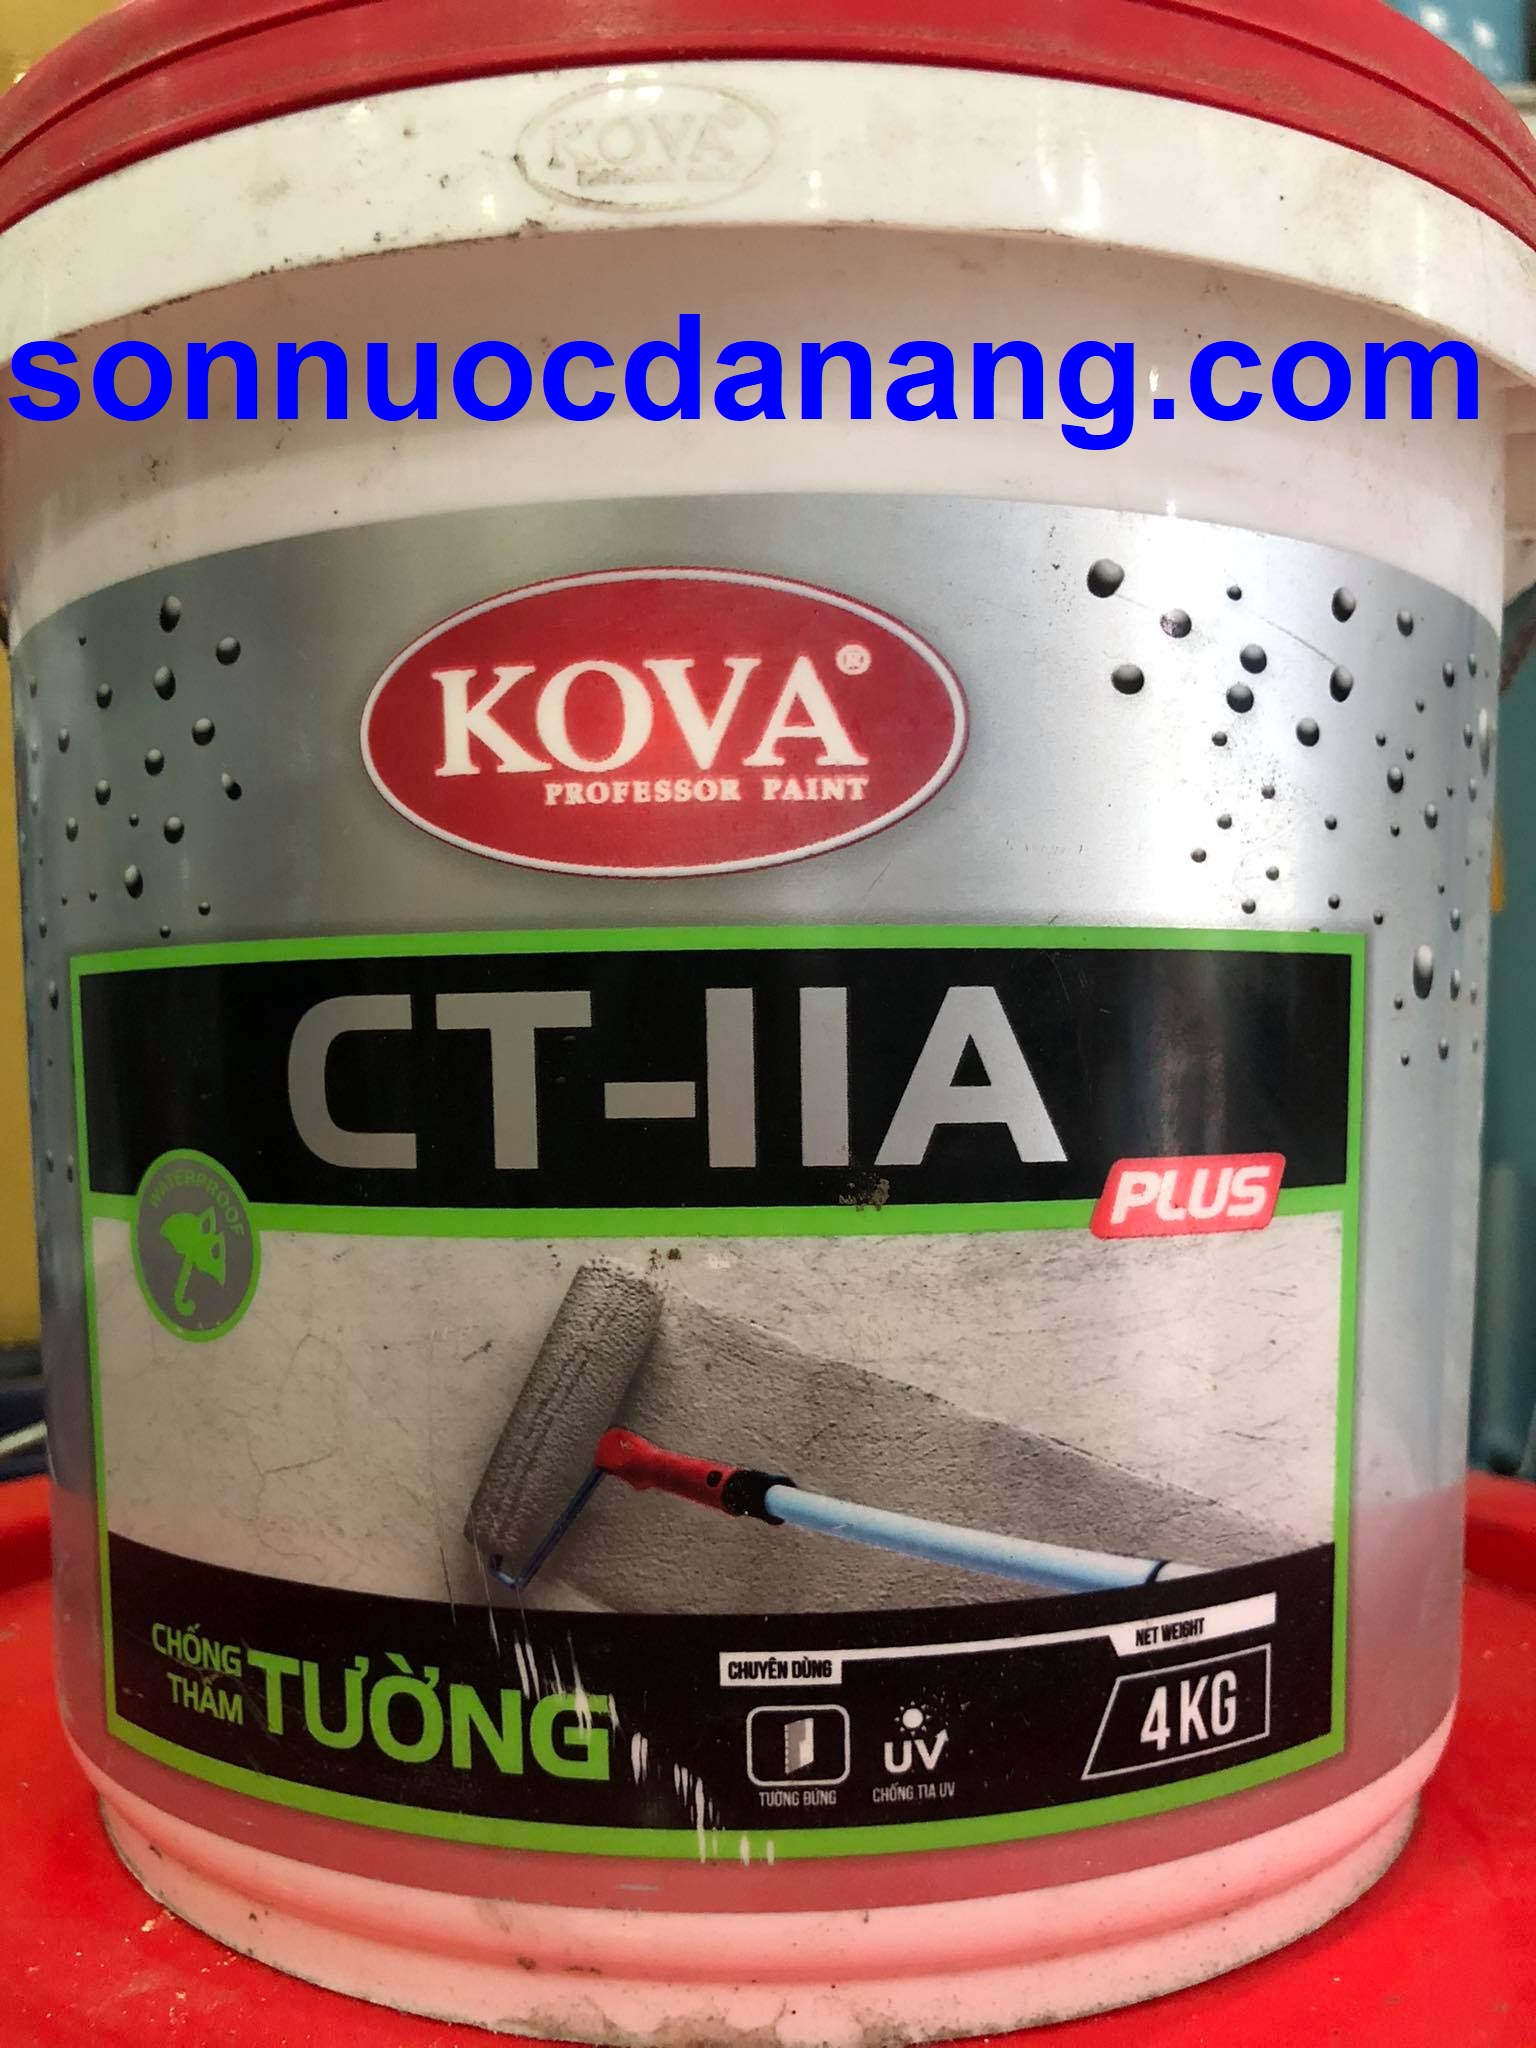 Sơn KOVA CT11A Plus: Sơn KOVA CT11A Plus là một lựa chọn hoàn hảo cho việc sơn các bề mặt kim loại, gỗ và nhựa composite. Với tính năng chống ăn mòn và chịu nước tuyệt vời, sản phẩm này mang đến cho bạn một lớp sơn bền vững và đẹp mắt.